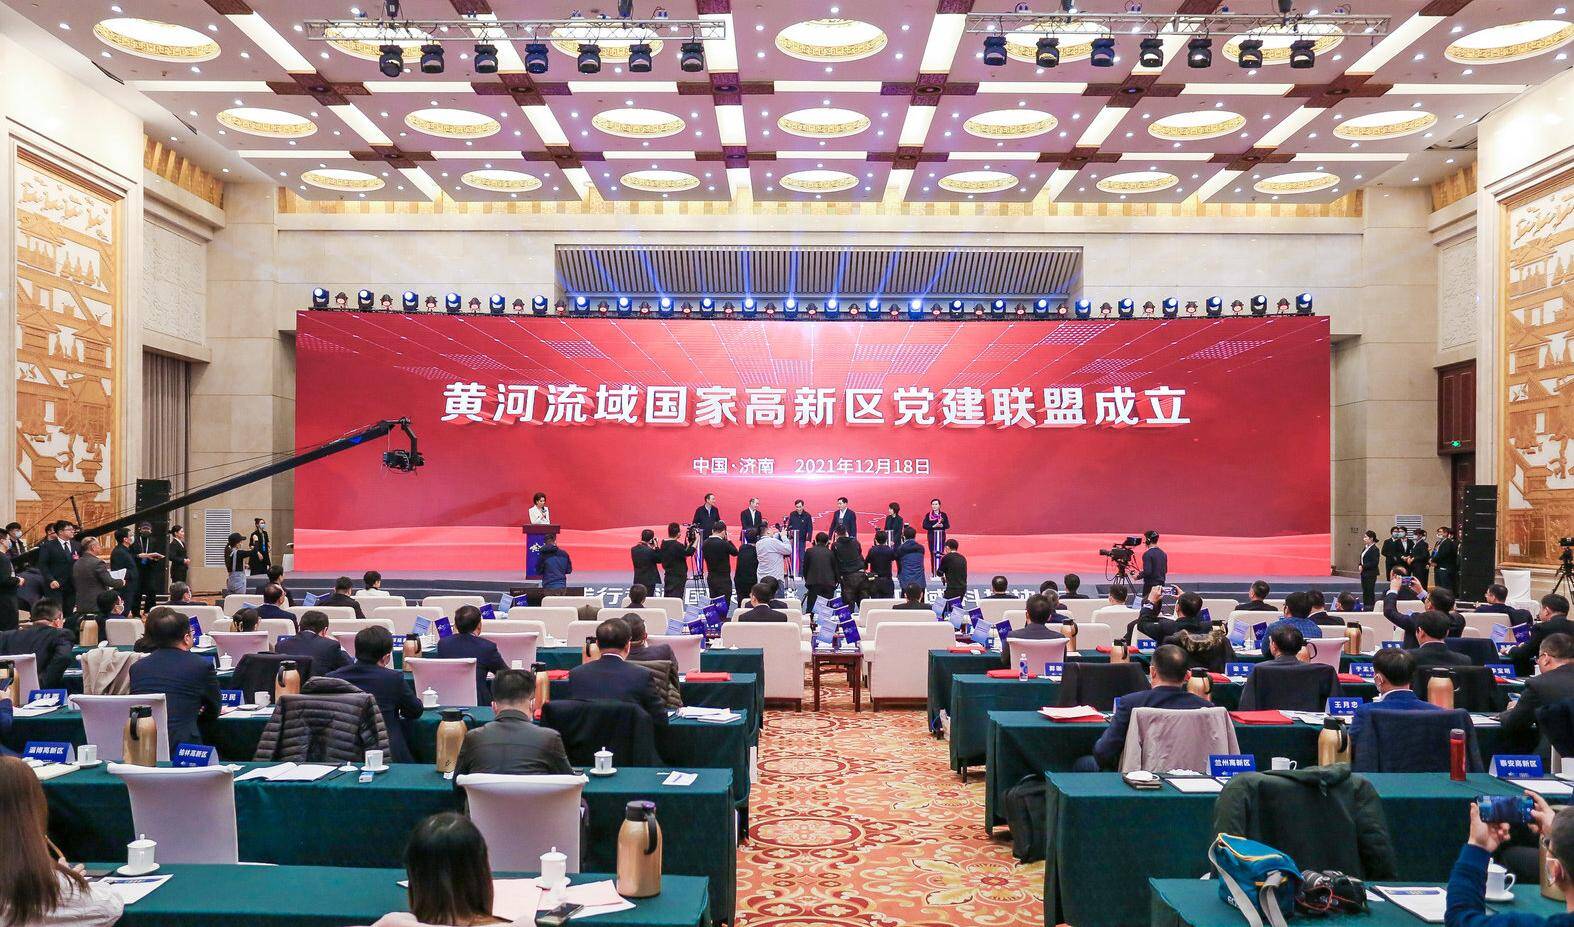 共通共融 合作共赢  黄河流域国家高新区党建联盟在济南揭牌